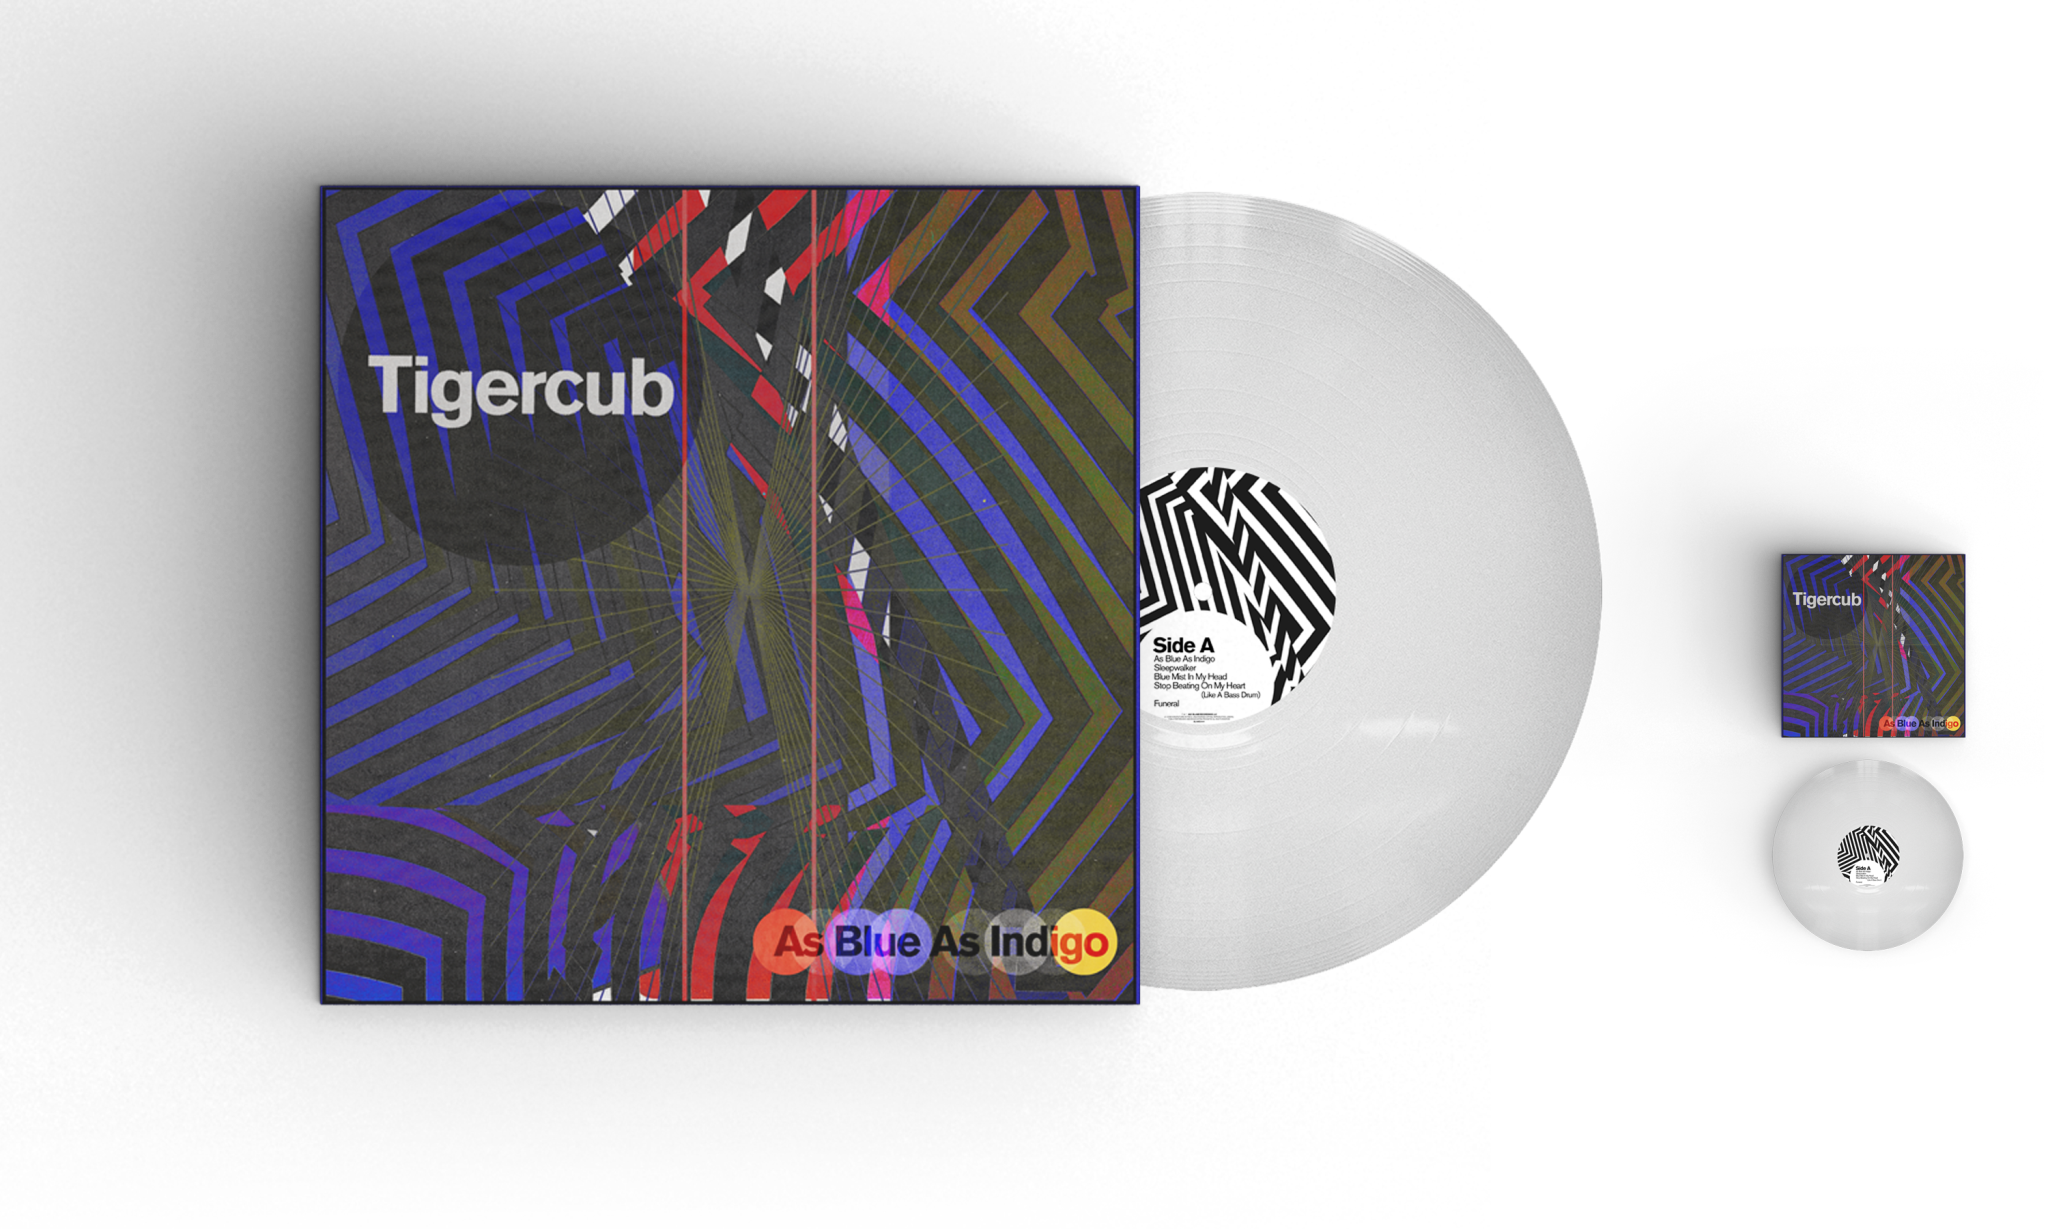 BLAME Recordings Tigercub - As Blue As Indigo (Indie Exclusive)